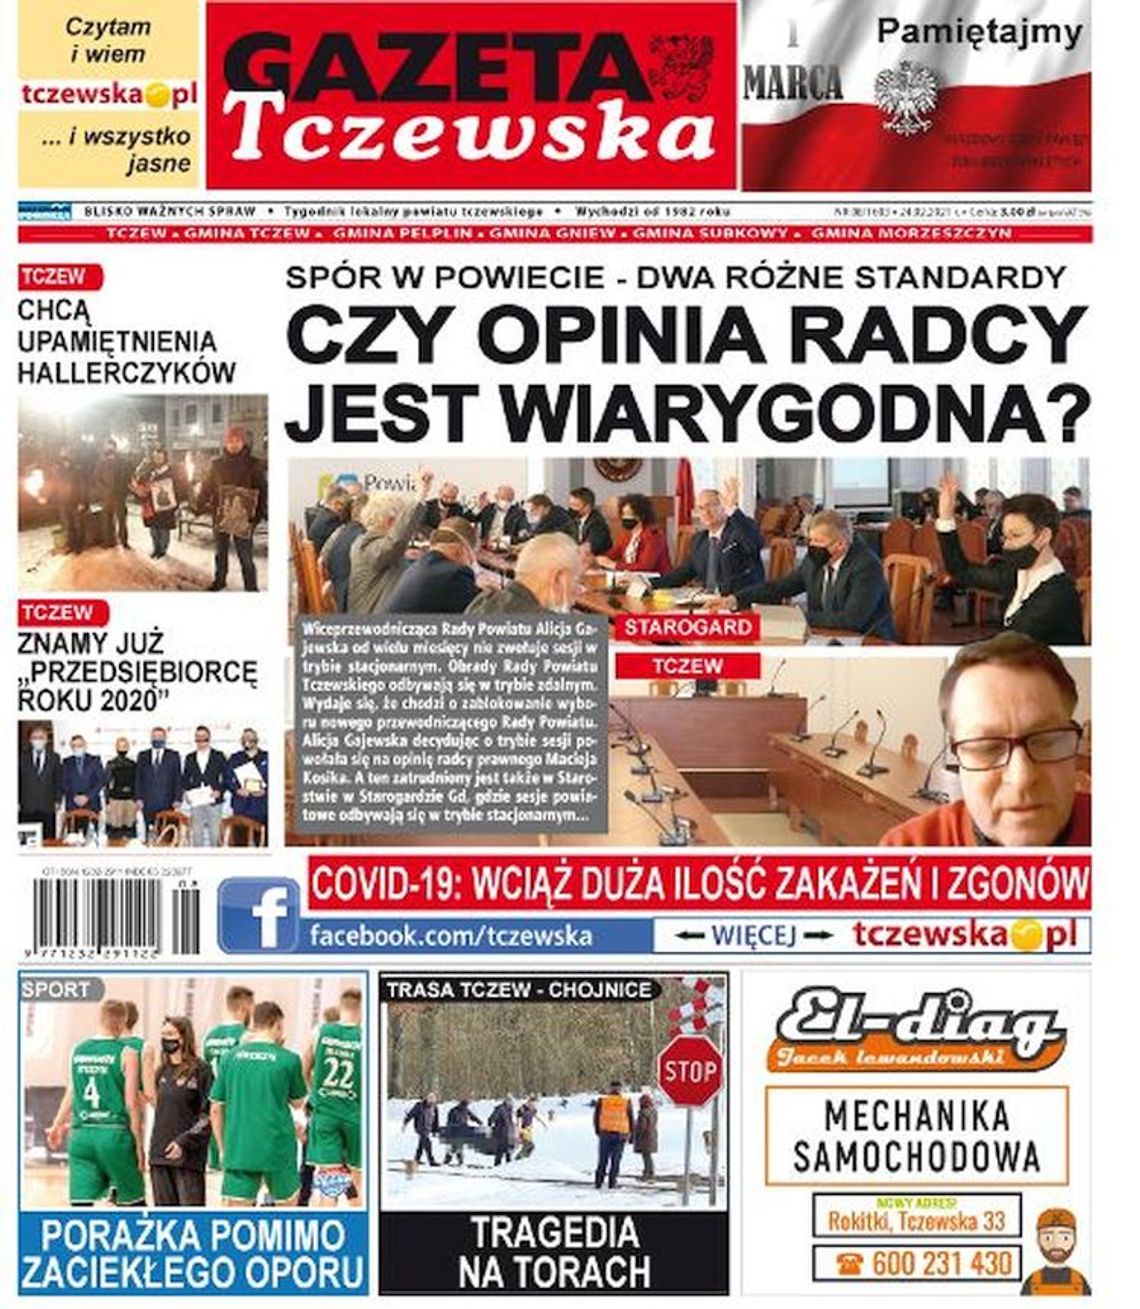 Kolejny numer Gazety Tczewskiej już w sprzedaży. Najnowsze wiadomości z Tczewa i okolic naszego powiatu już w Twoim kiosku. O czym piszemy w tym numerze?